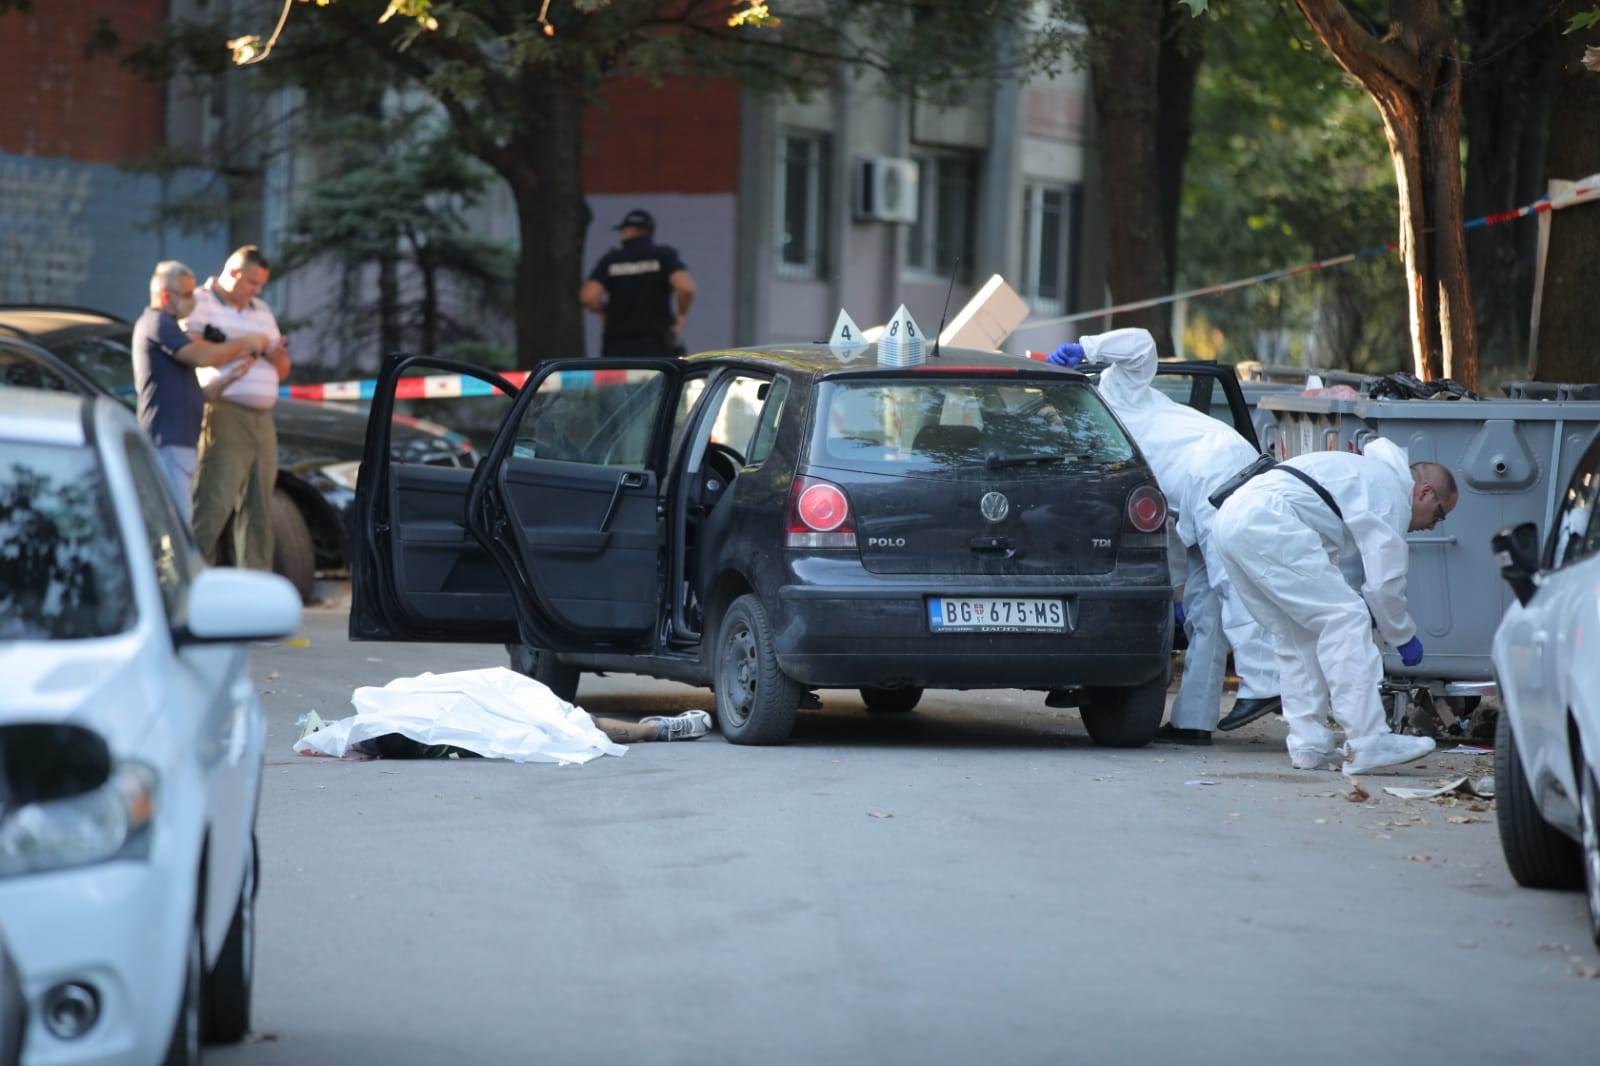  Beograd ubistvo Voždovac uhapšena braća roditelji otvoreno pismo 